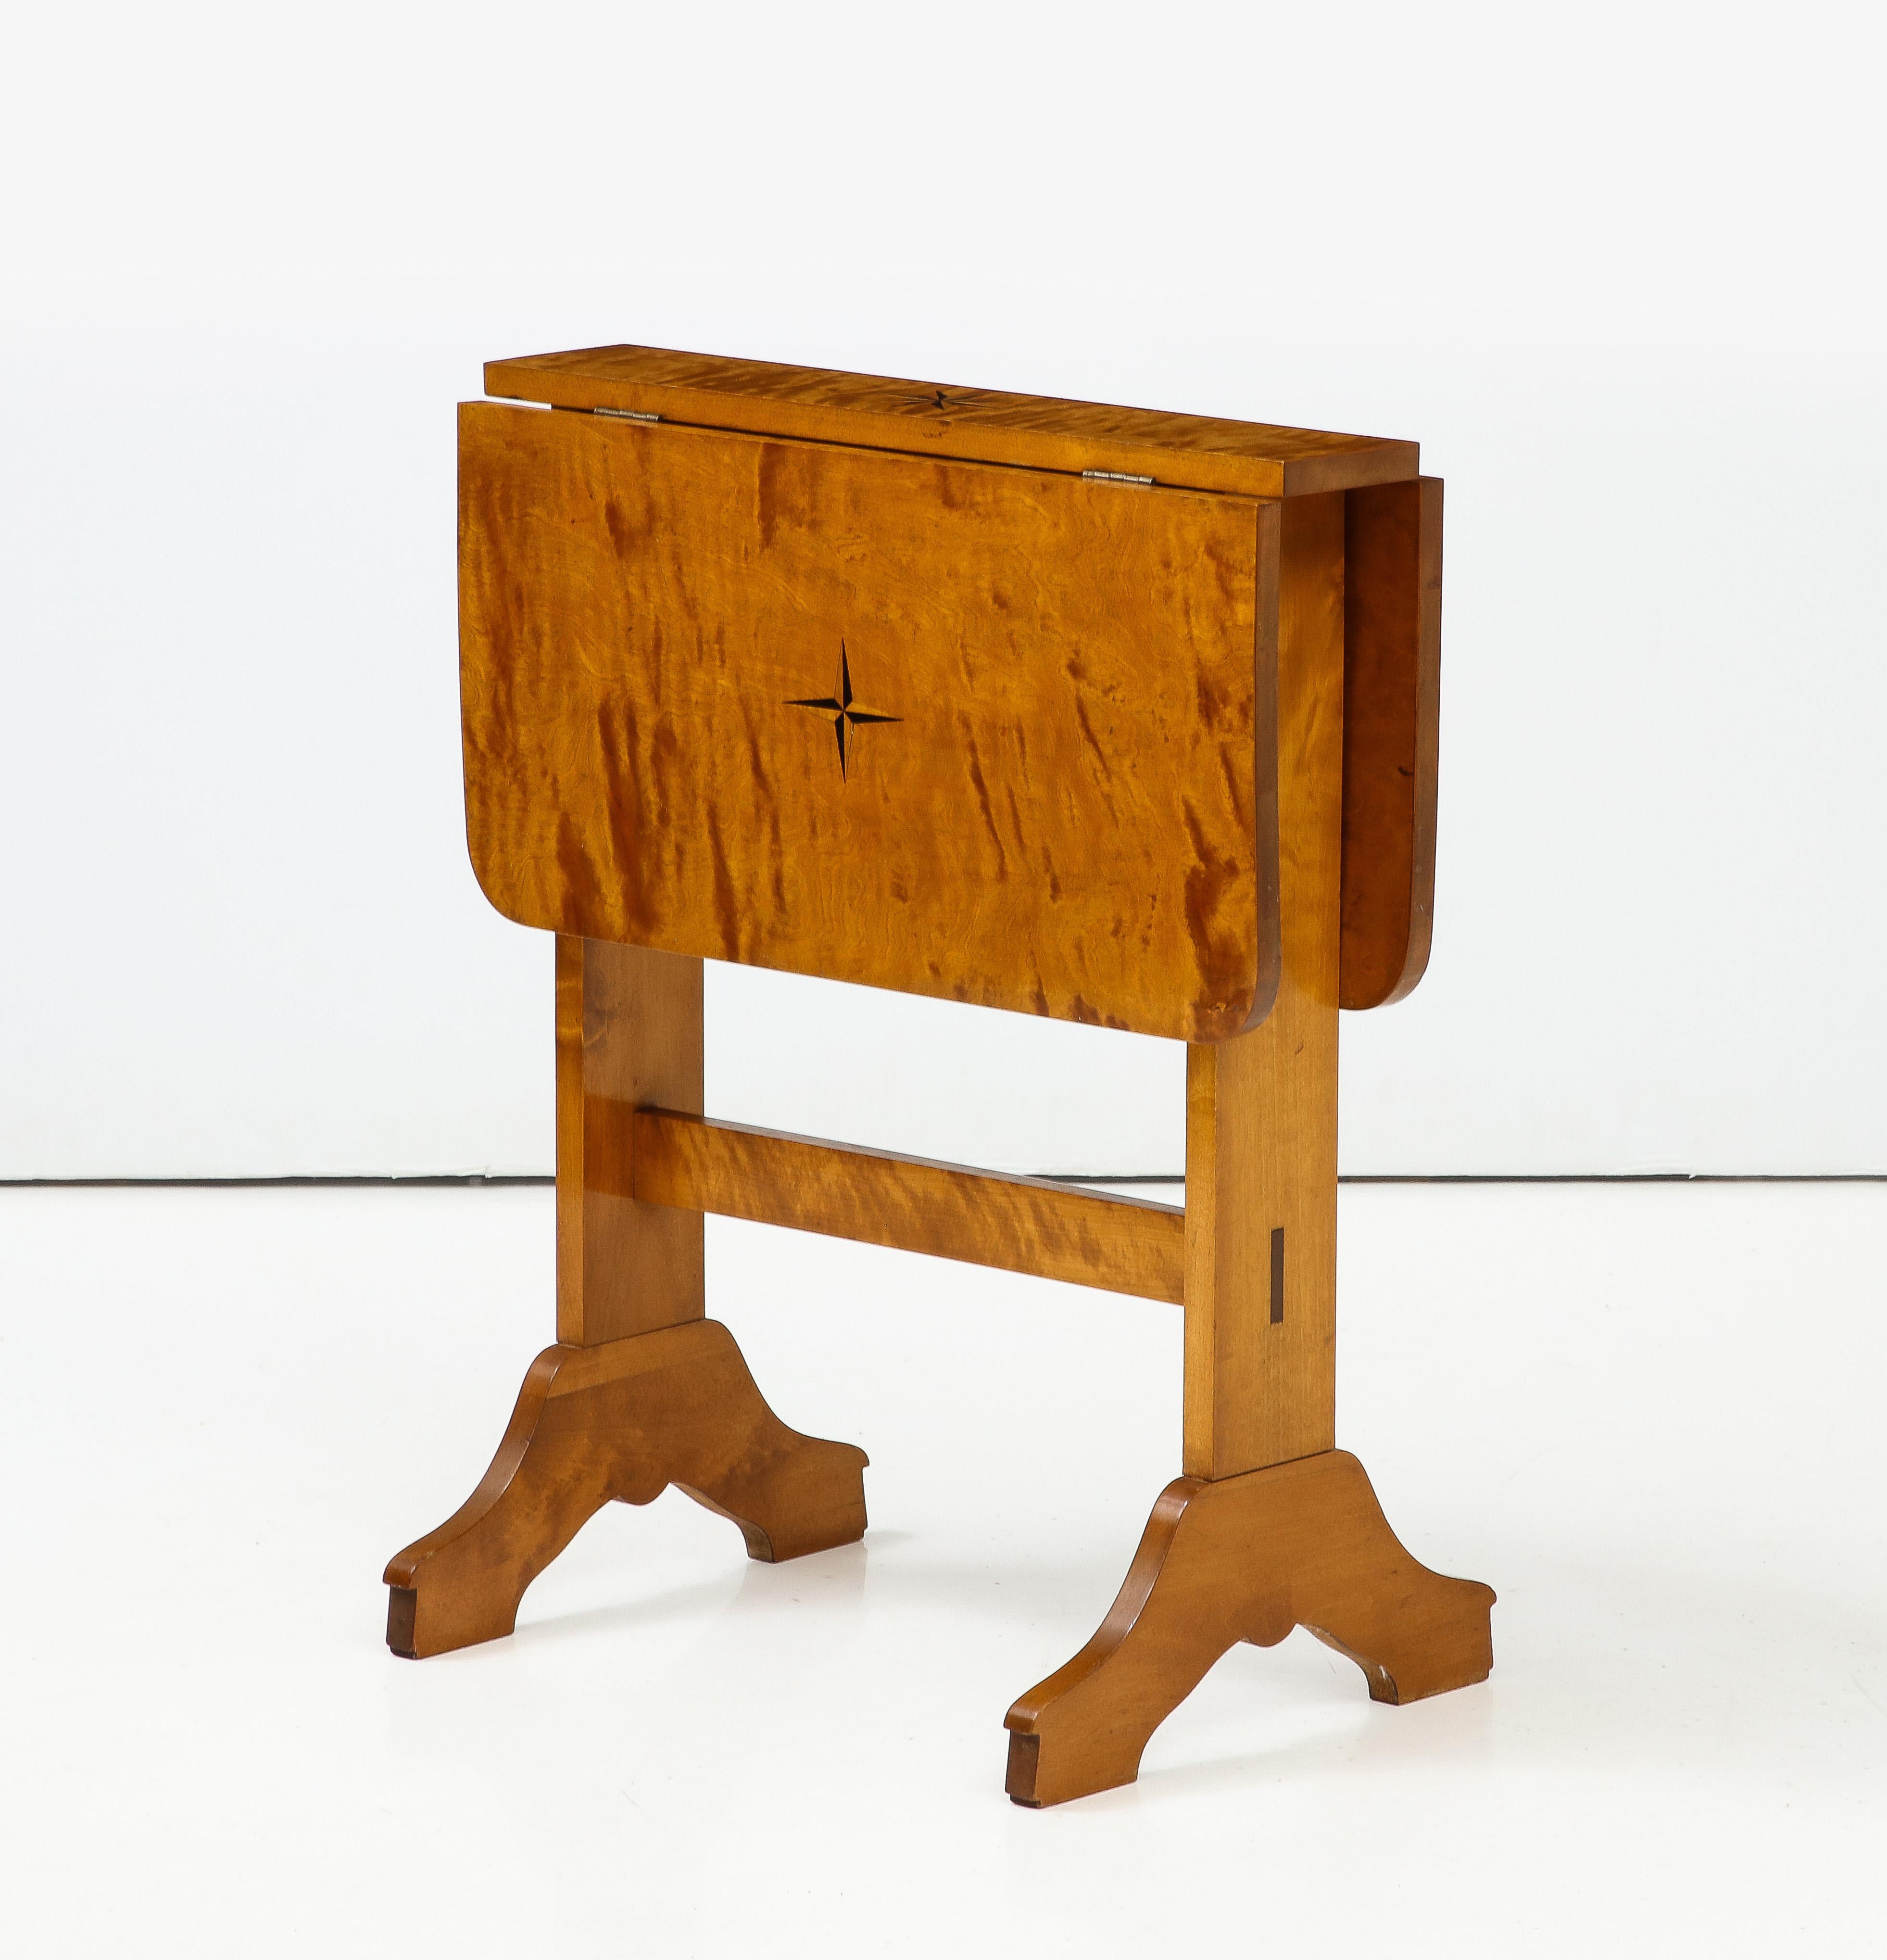 Schwedischer Deko-Tisch mit Intarsien aus Birkenholz, ca. 1930er Jahre, rechteckige Tischplatte mit 2 Fallblättern, durch Schwenken der Tischplatte erhöht.  Stützen mit einer Querstrebe und nach unten gebogenen Füßen. 
25,25 Zoll - Breite mit